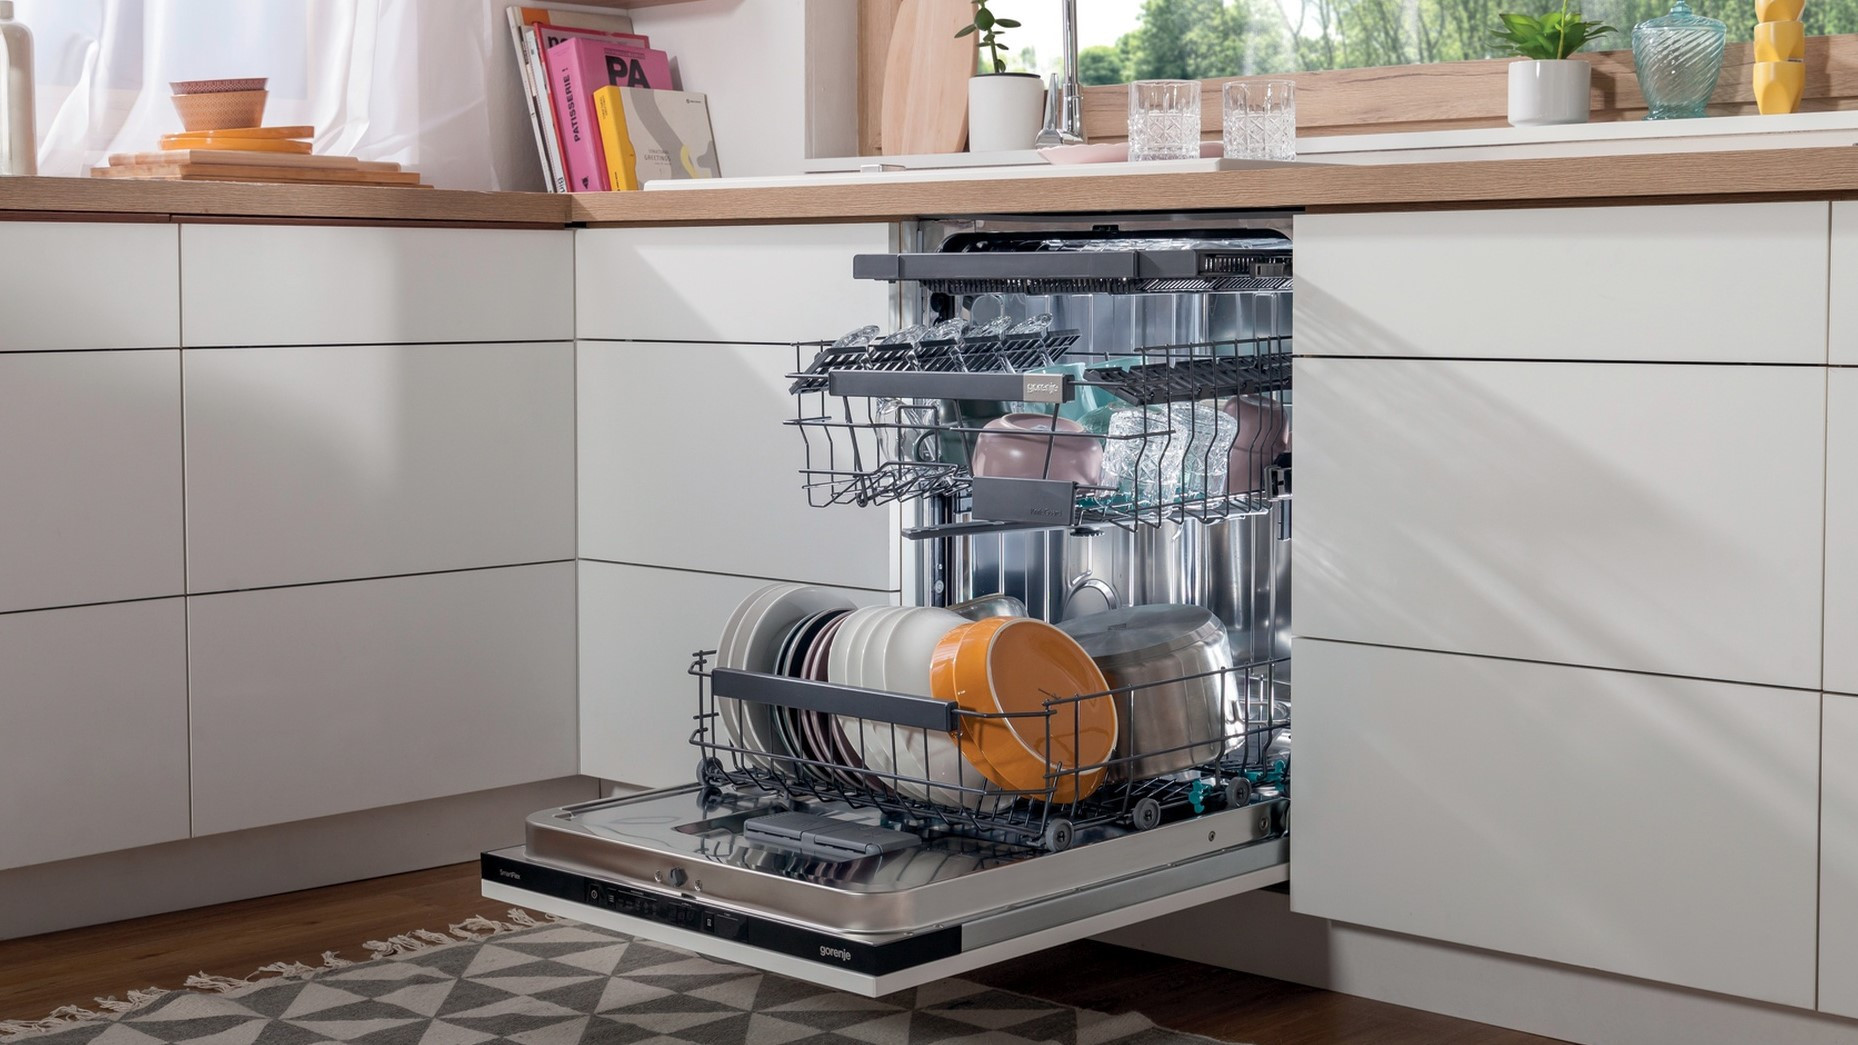 Почему посудомоечная машина стала. Посудомоечная машина Toshiba. Посудомоечная машина Gorenje неисправности. Посудомойка плохо моет посуду причины устранение. Посудомоечная машина Электролюкс плохо моет посуду причины.